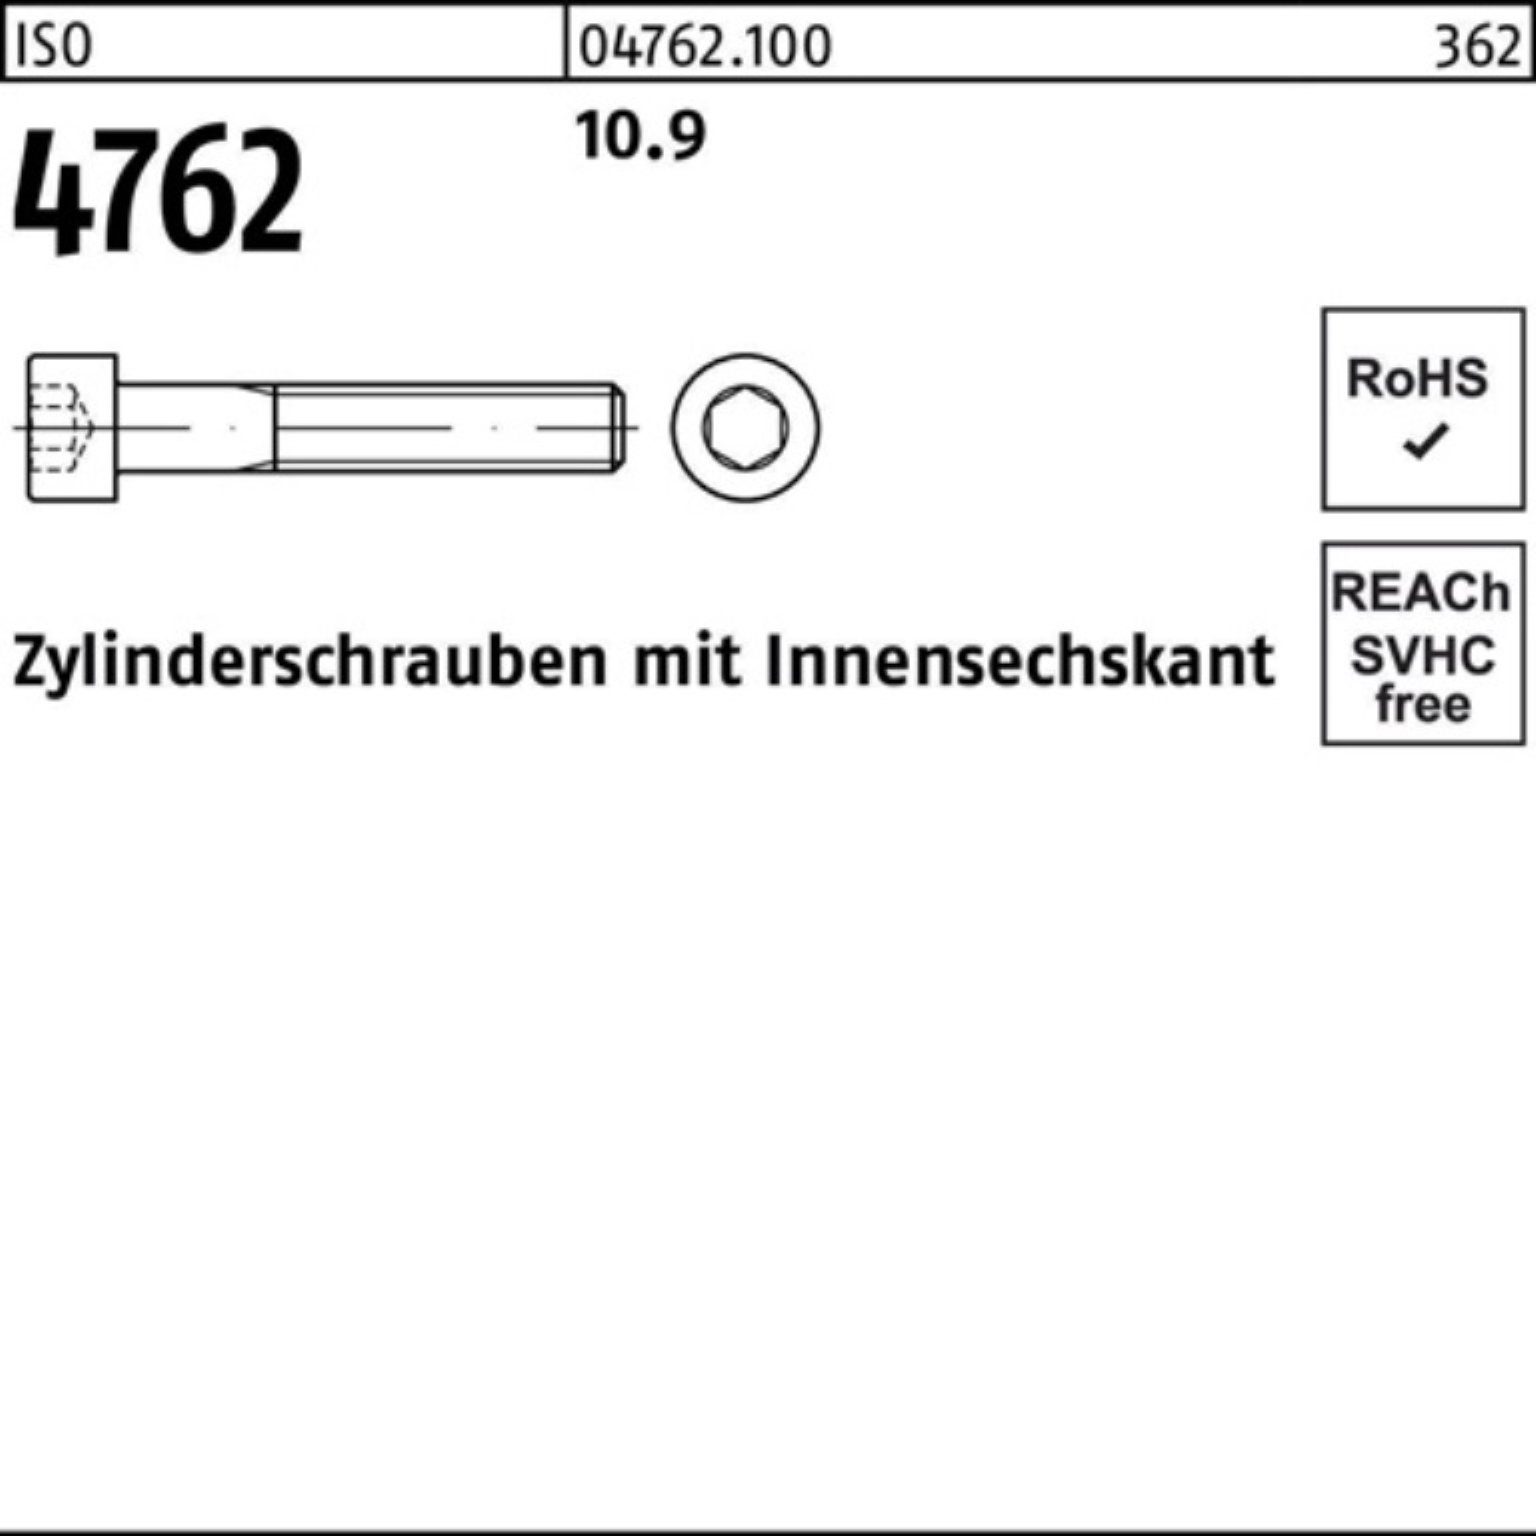 Zylinderschraube 1 10.9 Pack Innen-6kt ISO Stück 220 100er Reyher M33x 4762 Zylinderschraube